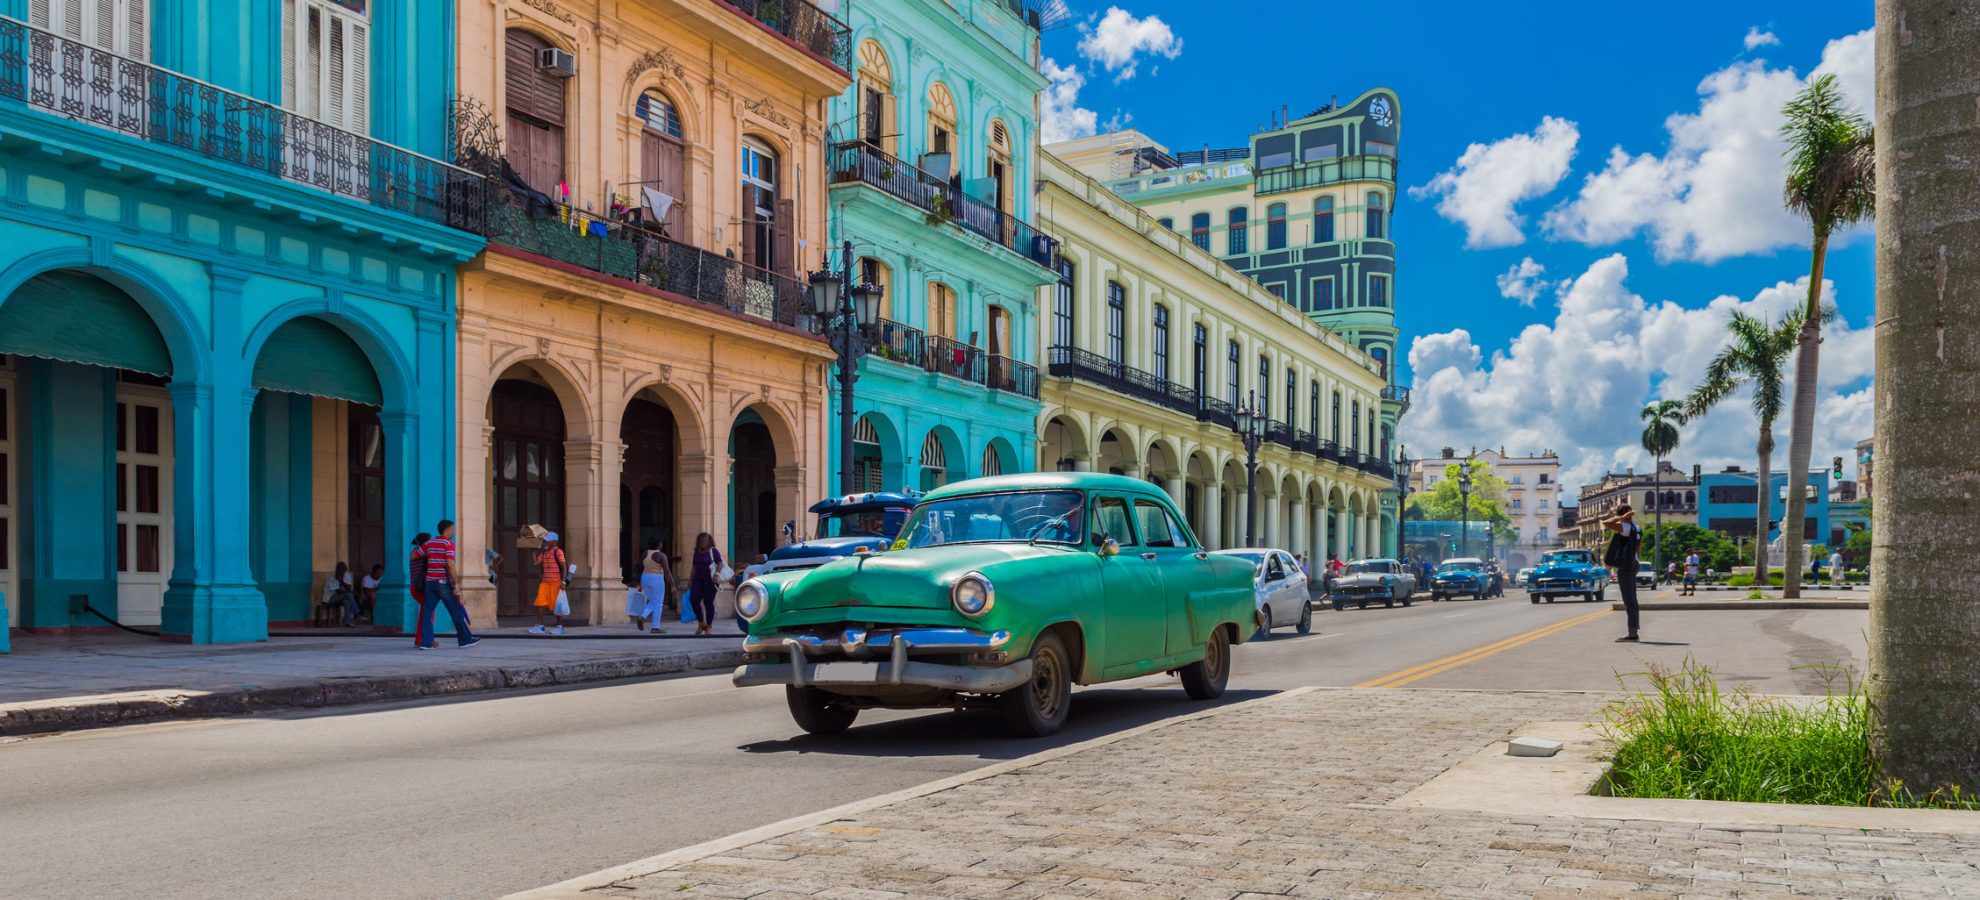 hoofdstraat in de stad Havana Cuba